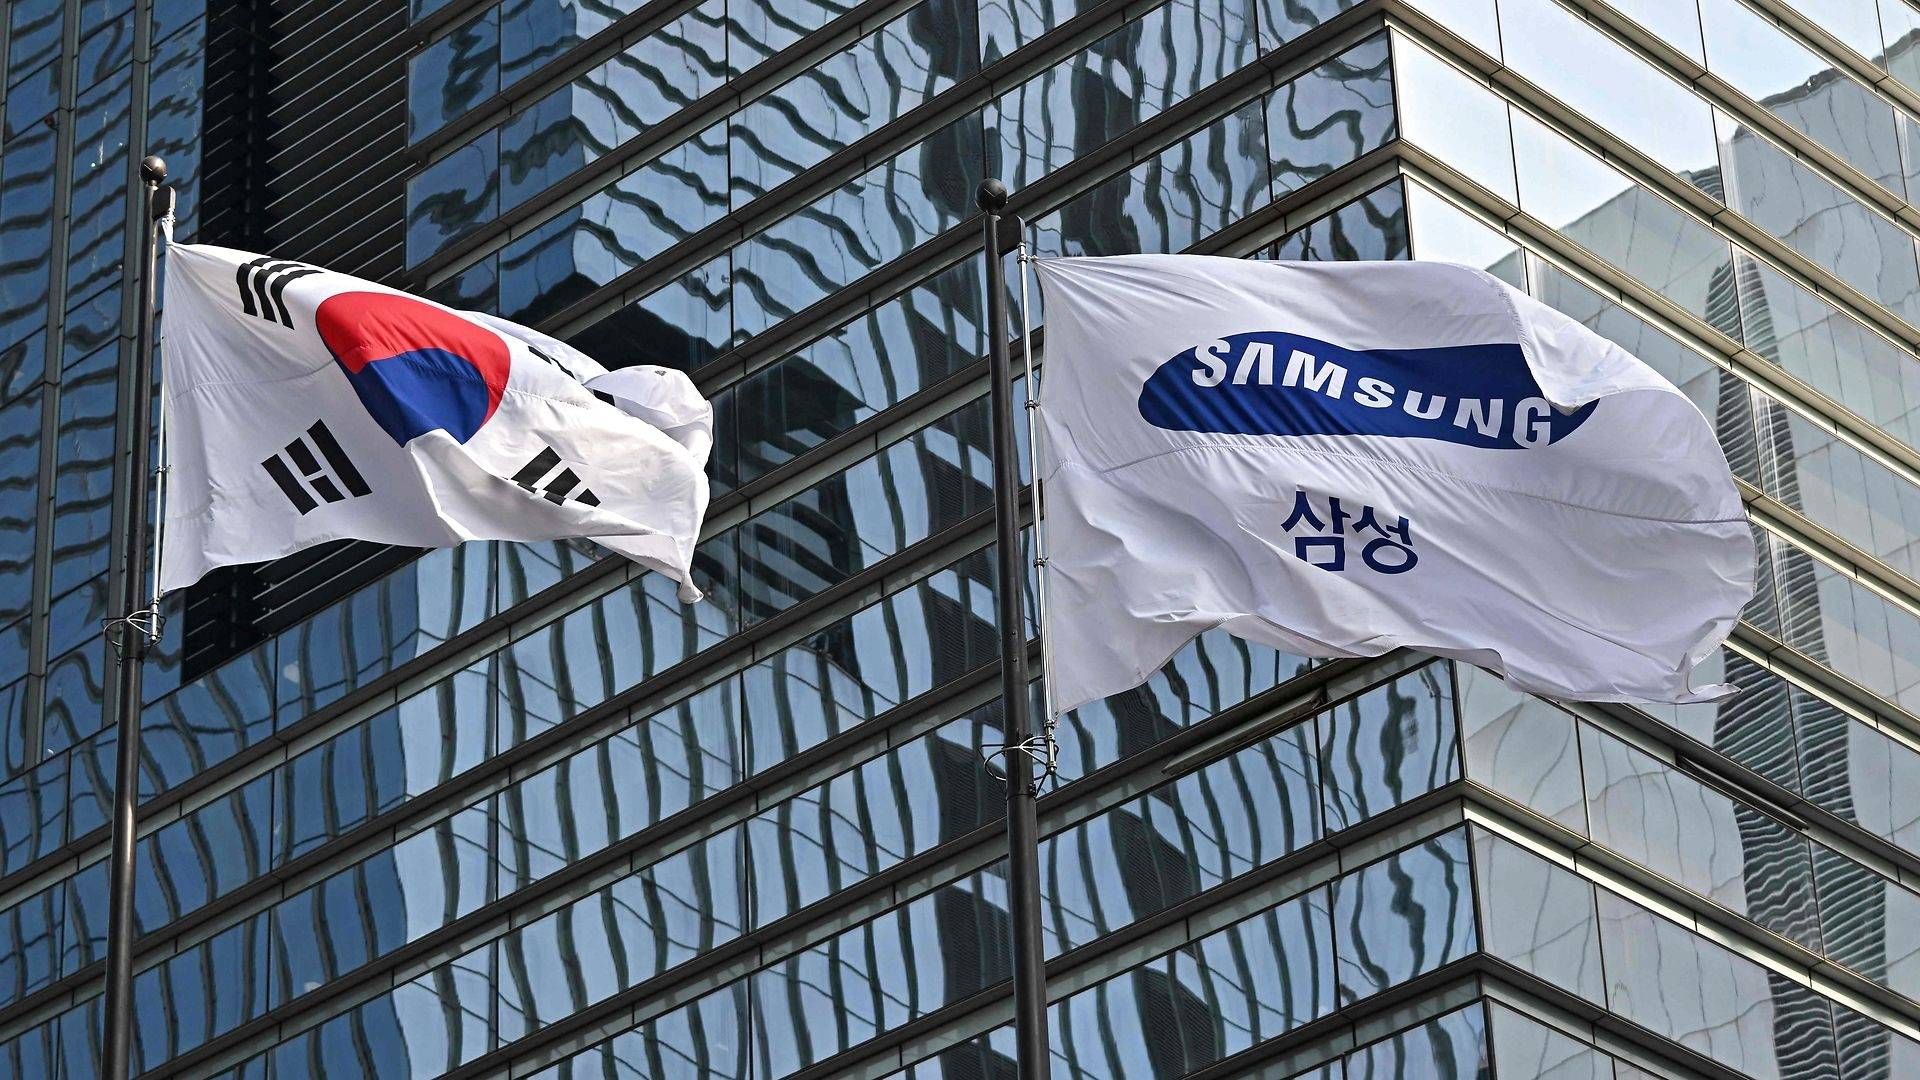 Samsung-konglomeratets sammenlagte omsætning svarer til en femtedel af Sydkoreas bruttonationalprodukt. Samsung Electronics er flagskibet i det enorme Samsung-konglomerat. | Foto: Jung Yeon-Je/AFP/Ritzau Scanpix/AFP / AFP